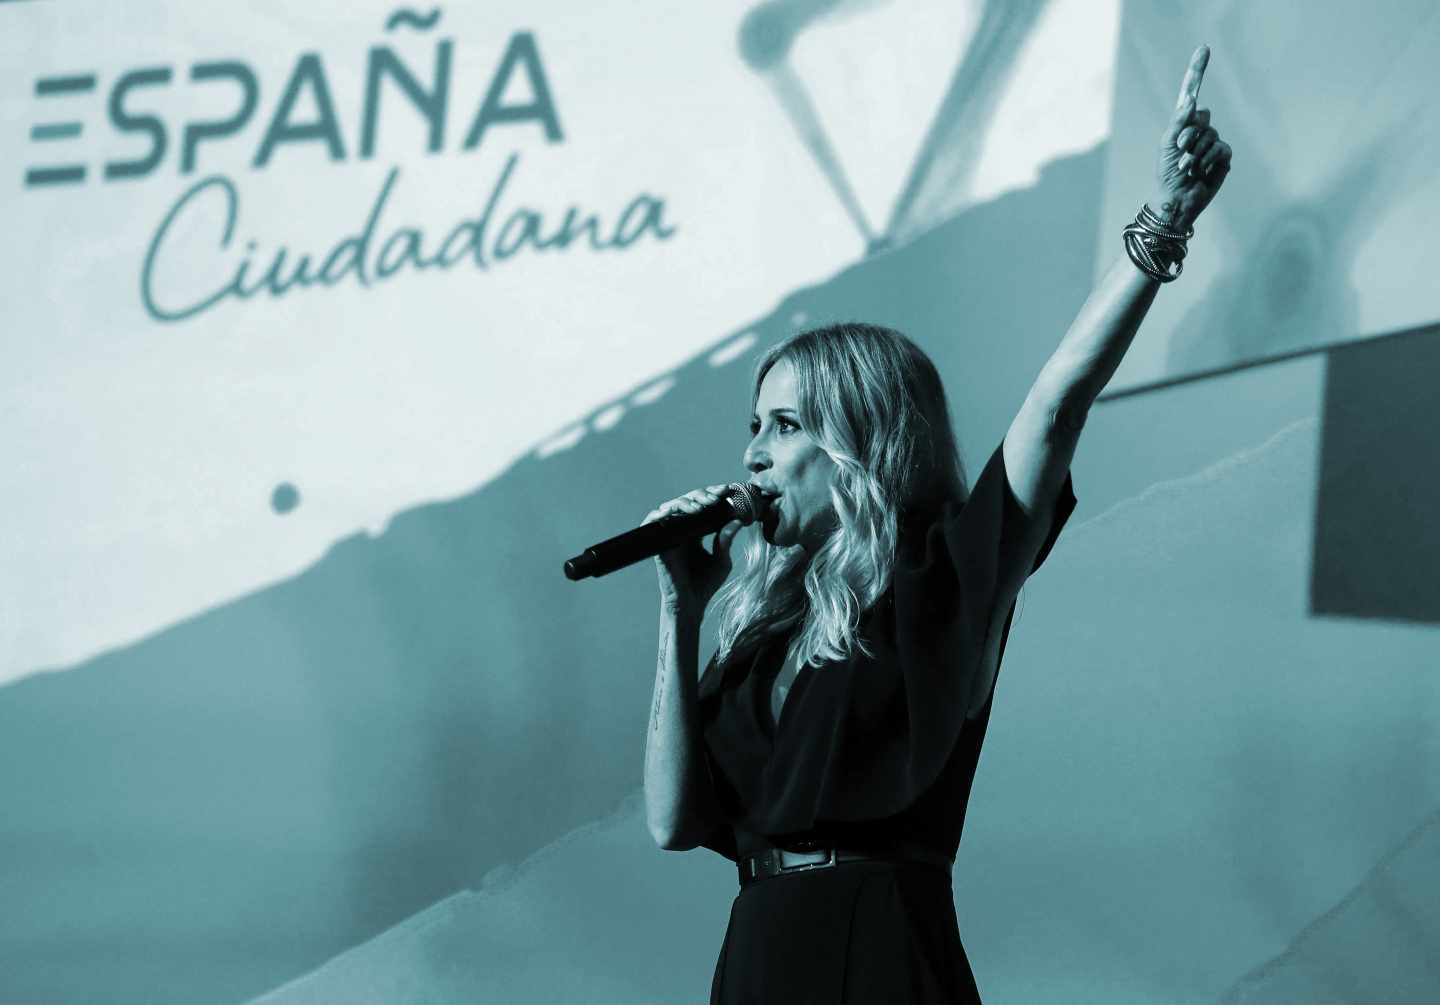 La cantante Marta Sánchez, canta 'a capella' su versión del himno de España, durante la presentación de la plataforma "ESPAÑA Ciudadana", una plataforma propuesta por Ciudadanos en favor de la unidad del país, hoy en un acto en el Palacio de Congresos de Ifema de Madrid